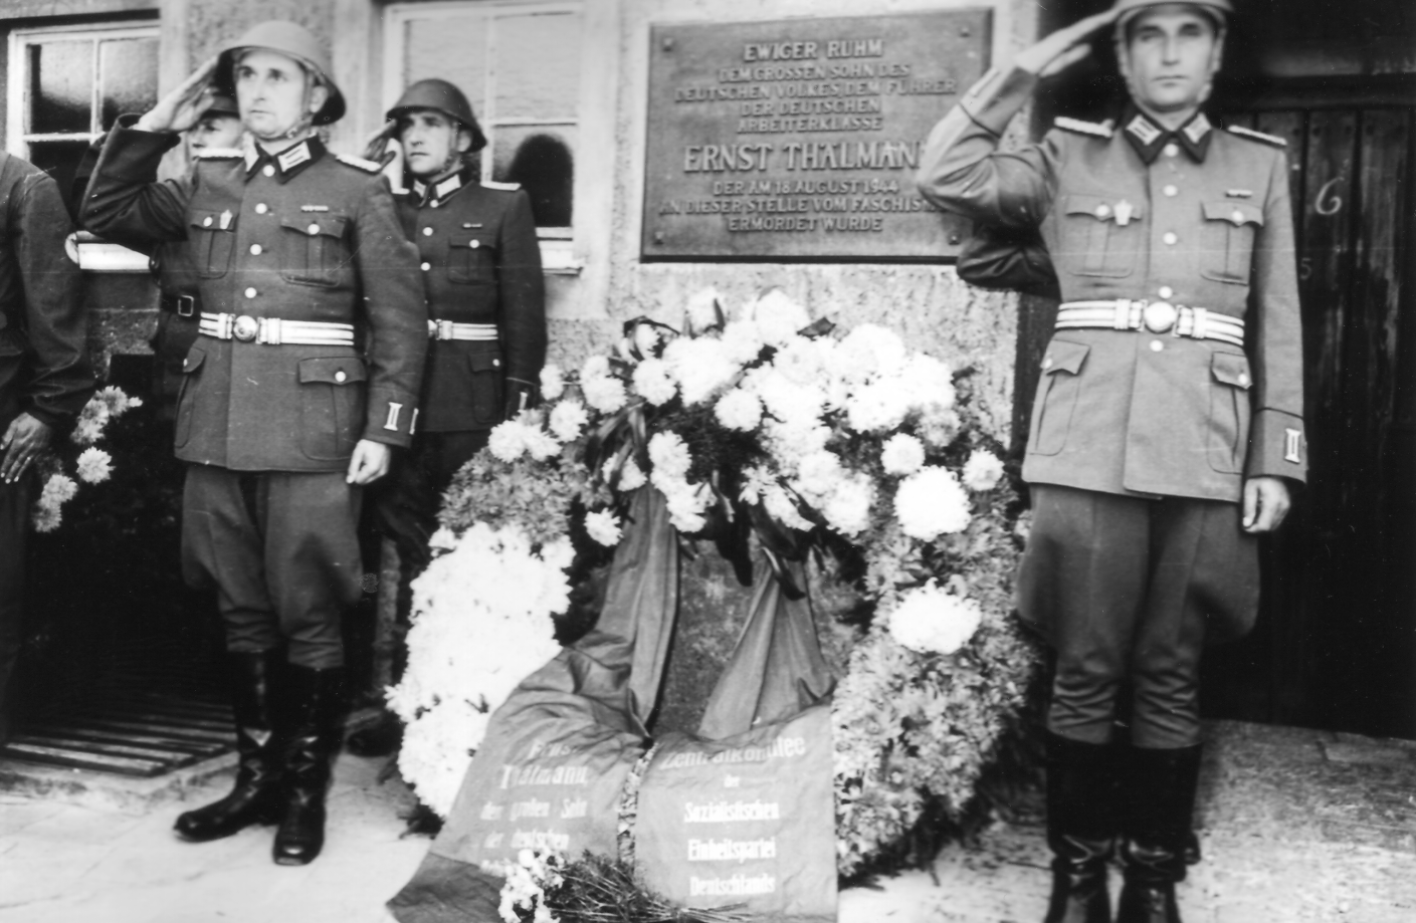 Drei Soldaten der NVA salutieren um einen Kranz, der vor der Gedenktafel für Ernst Thälmannniedergelegt wurde